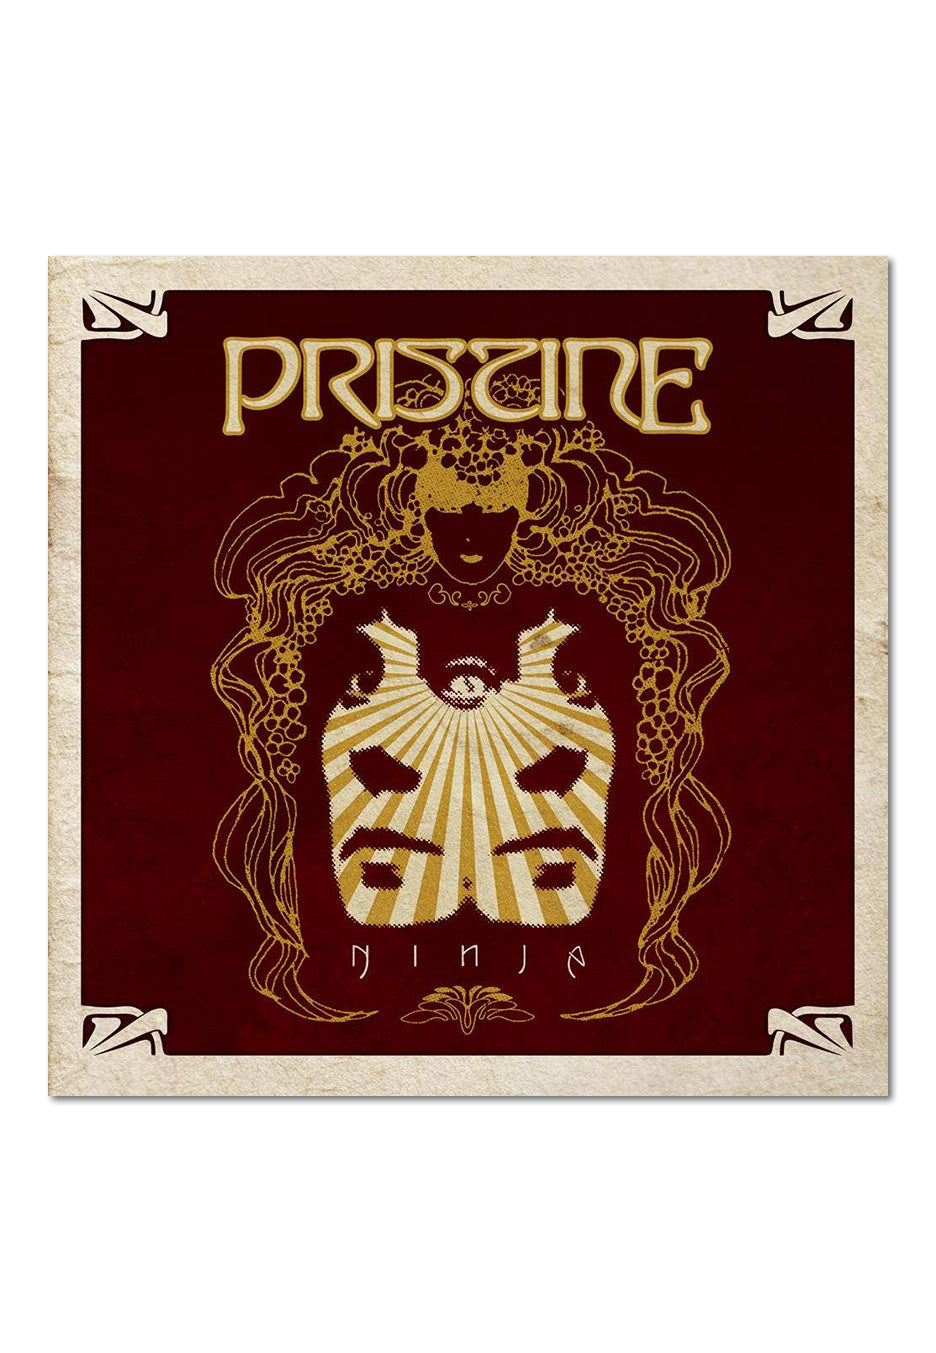 Pristine - Ninja Digipak - Digipak CD